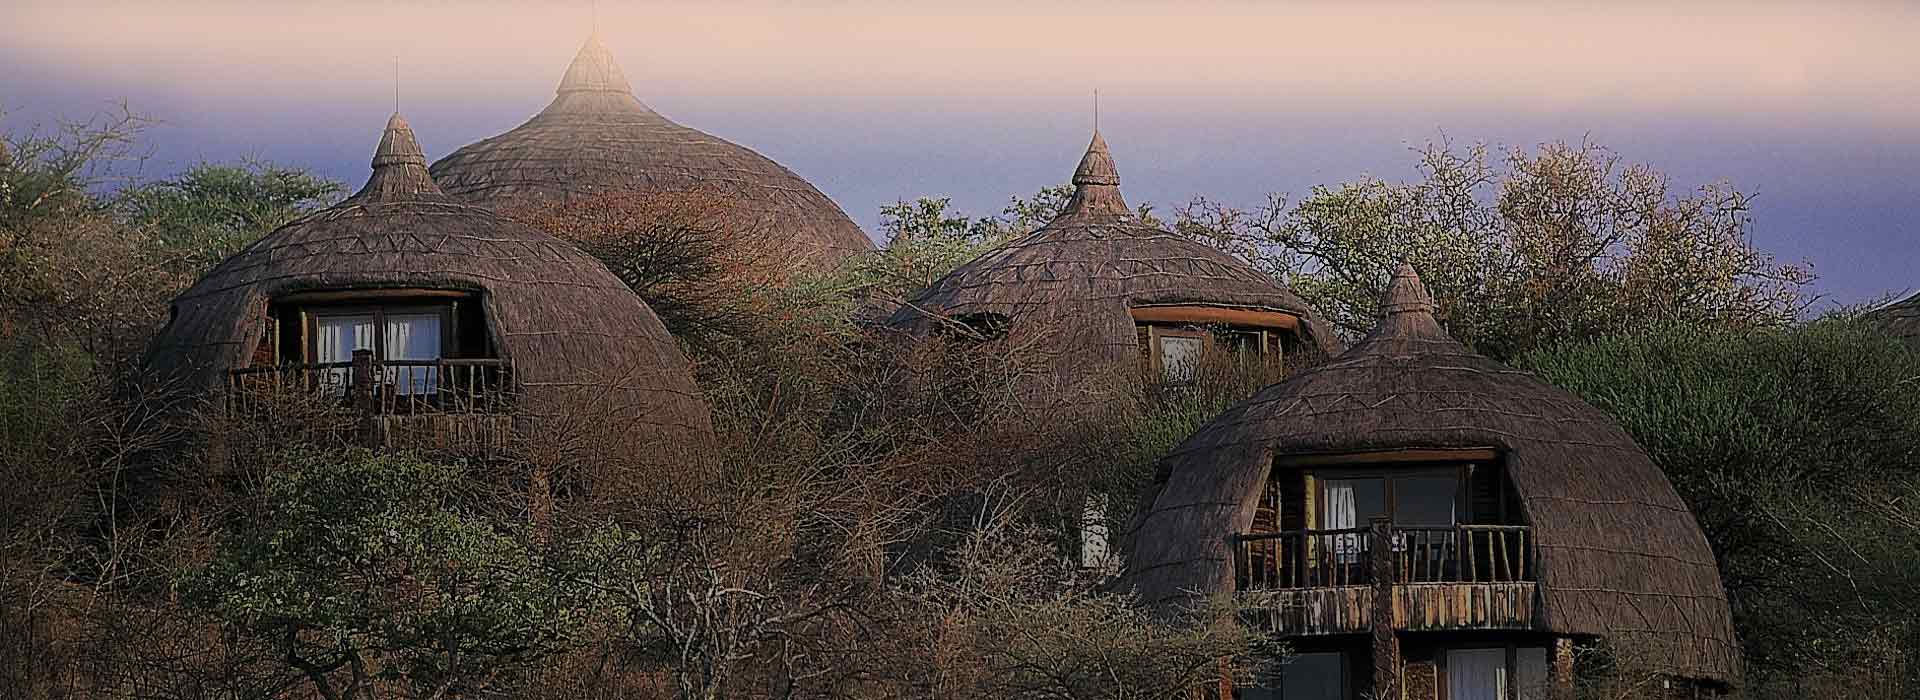 Tanzania Lodge Safari 